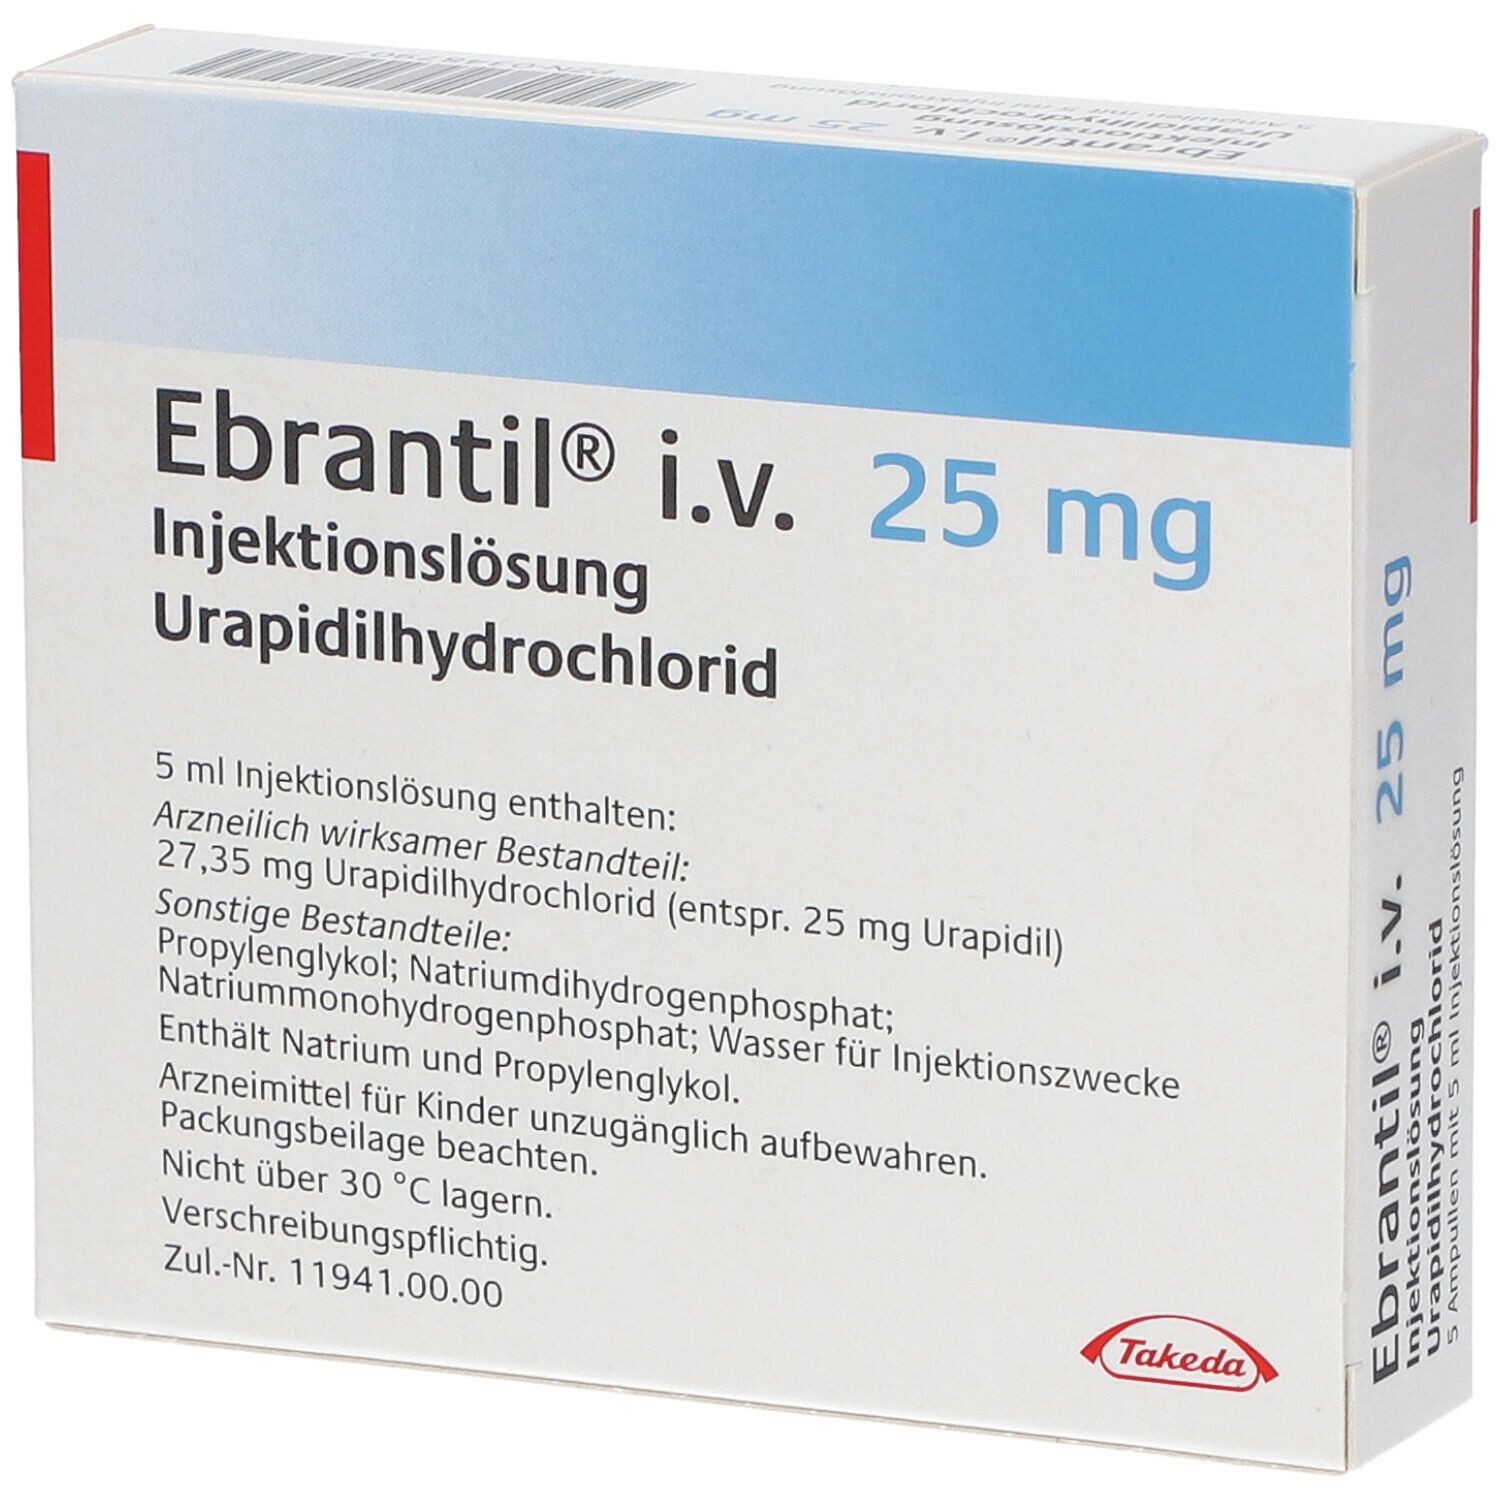 Ebrantil® i.v. 25 mg